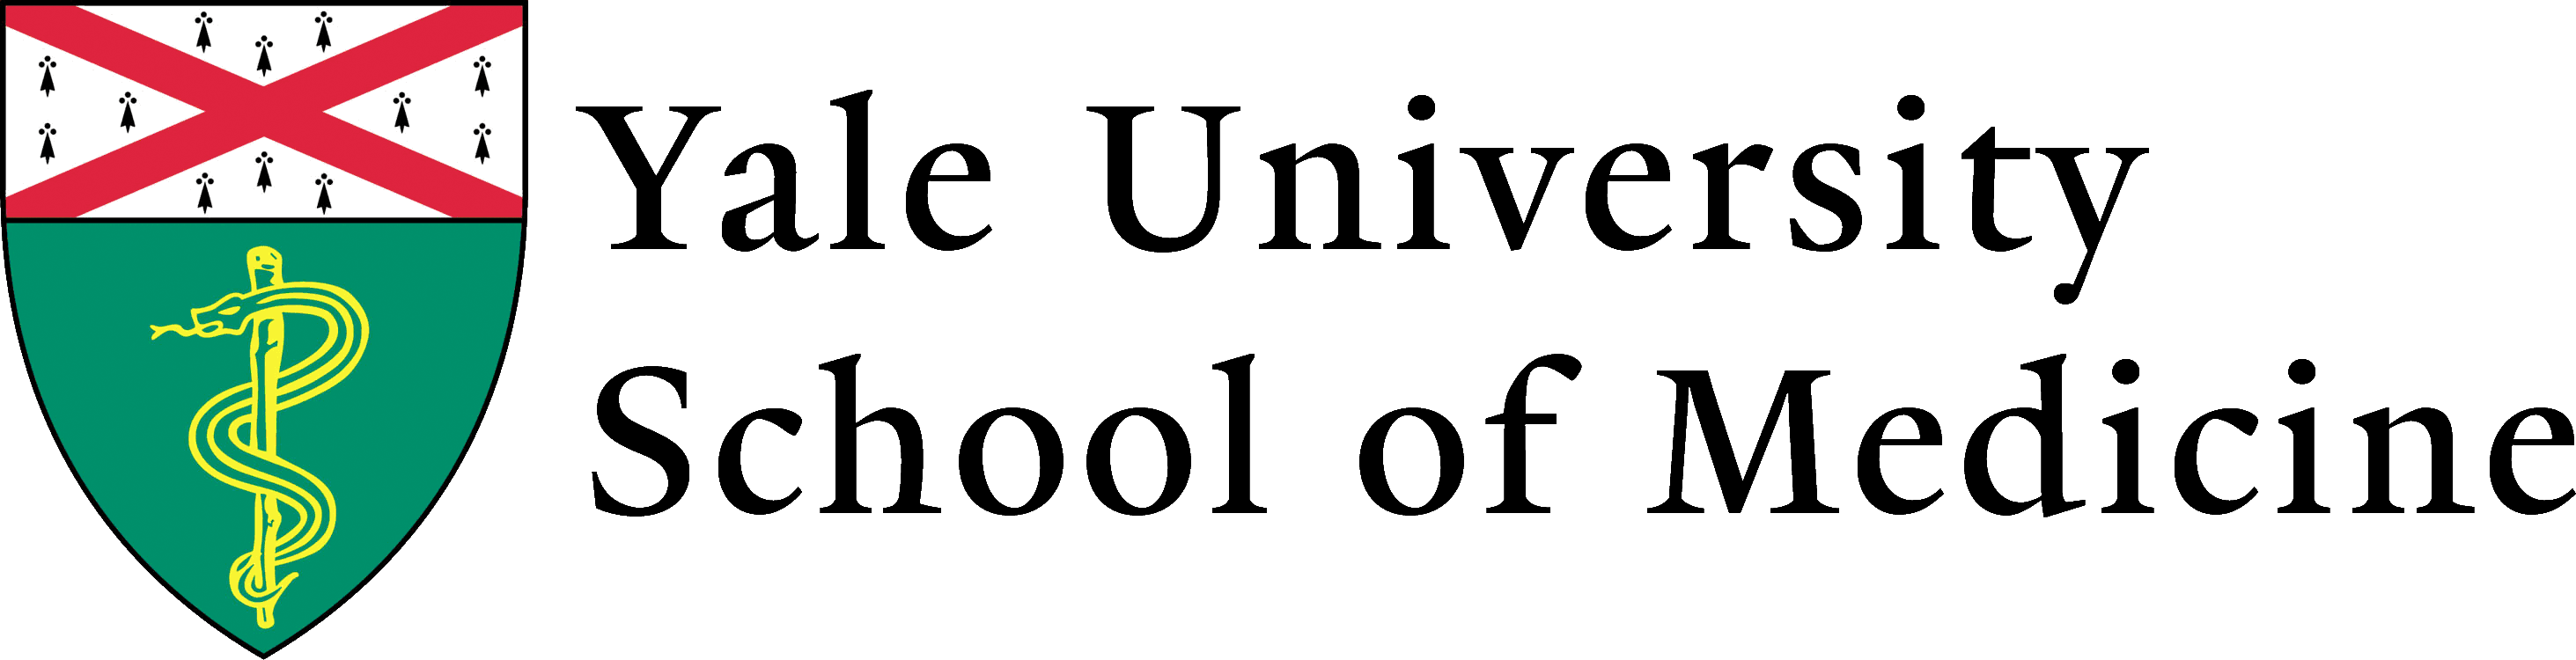 Yale School of Medicine [logotipo y texto]